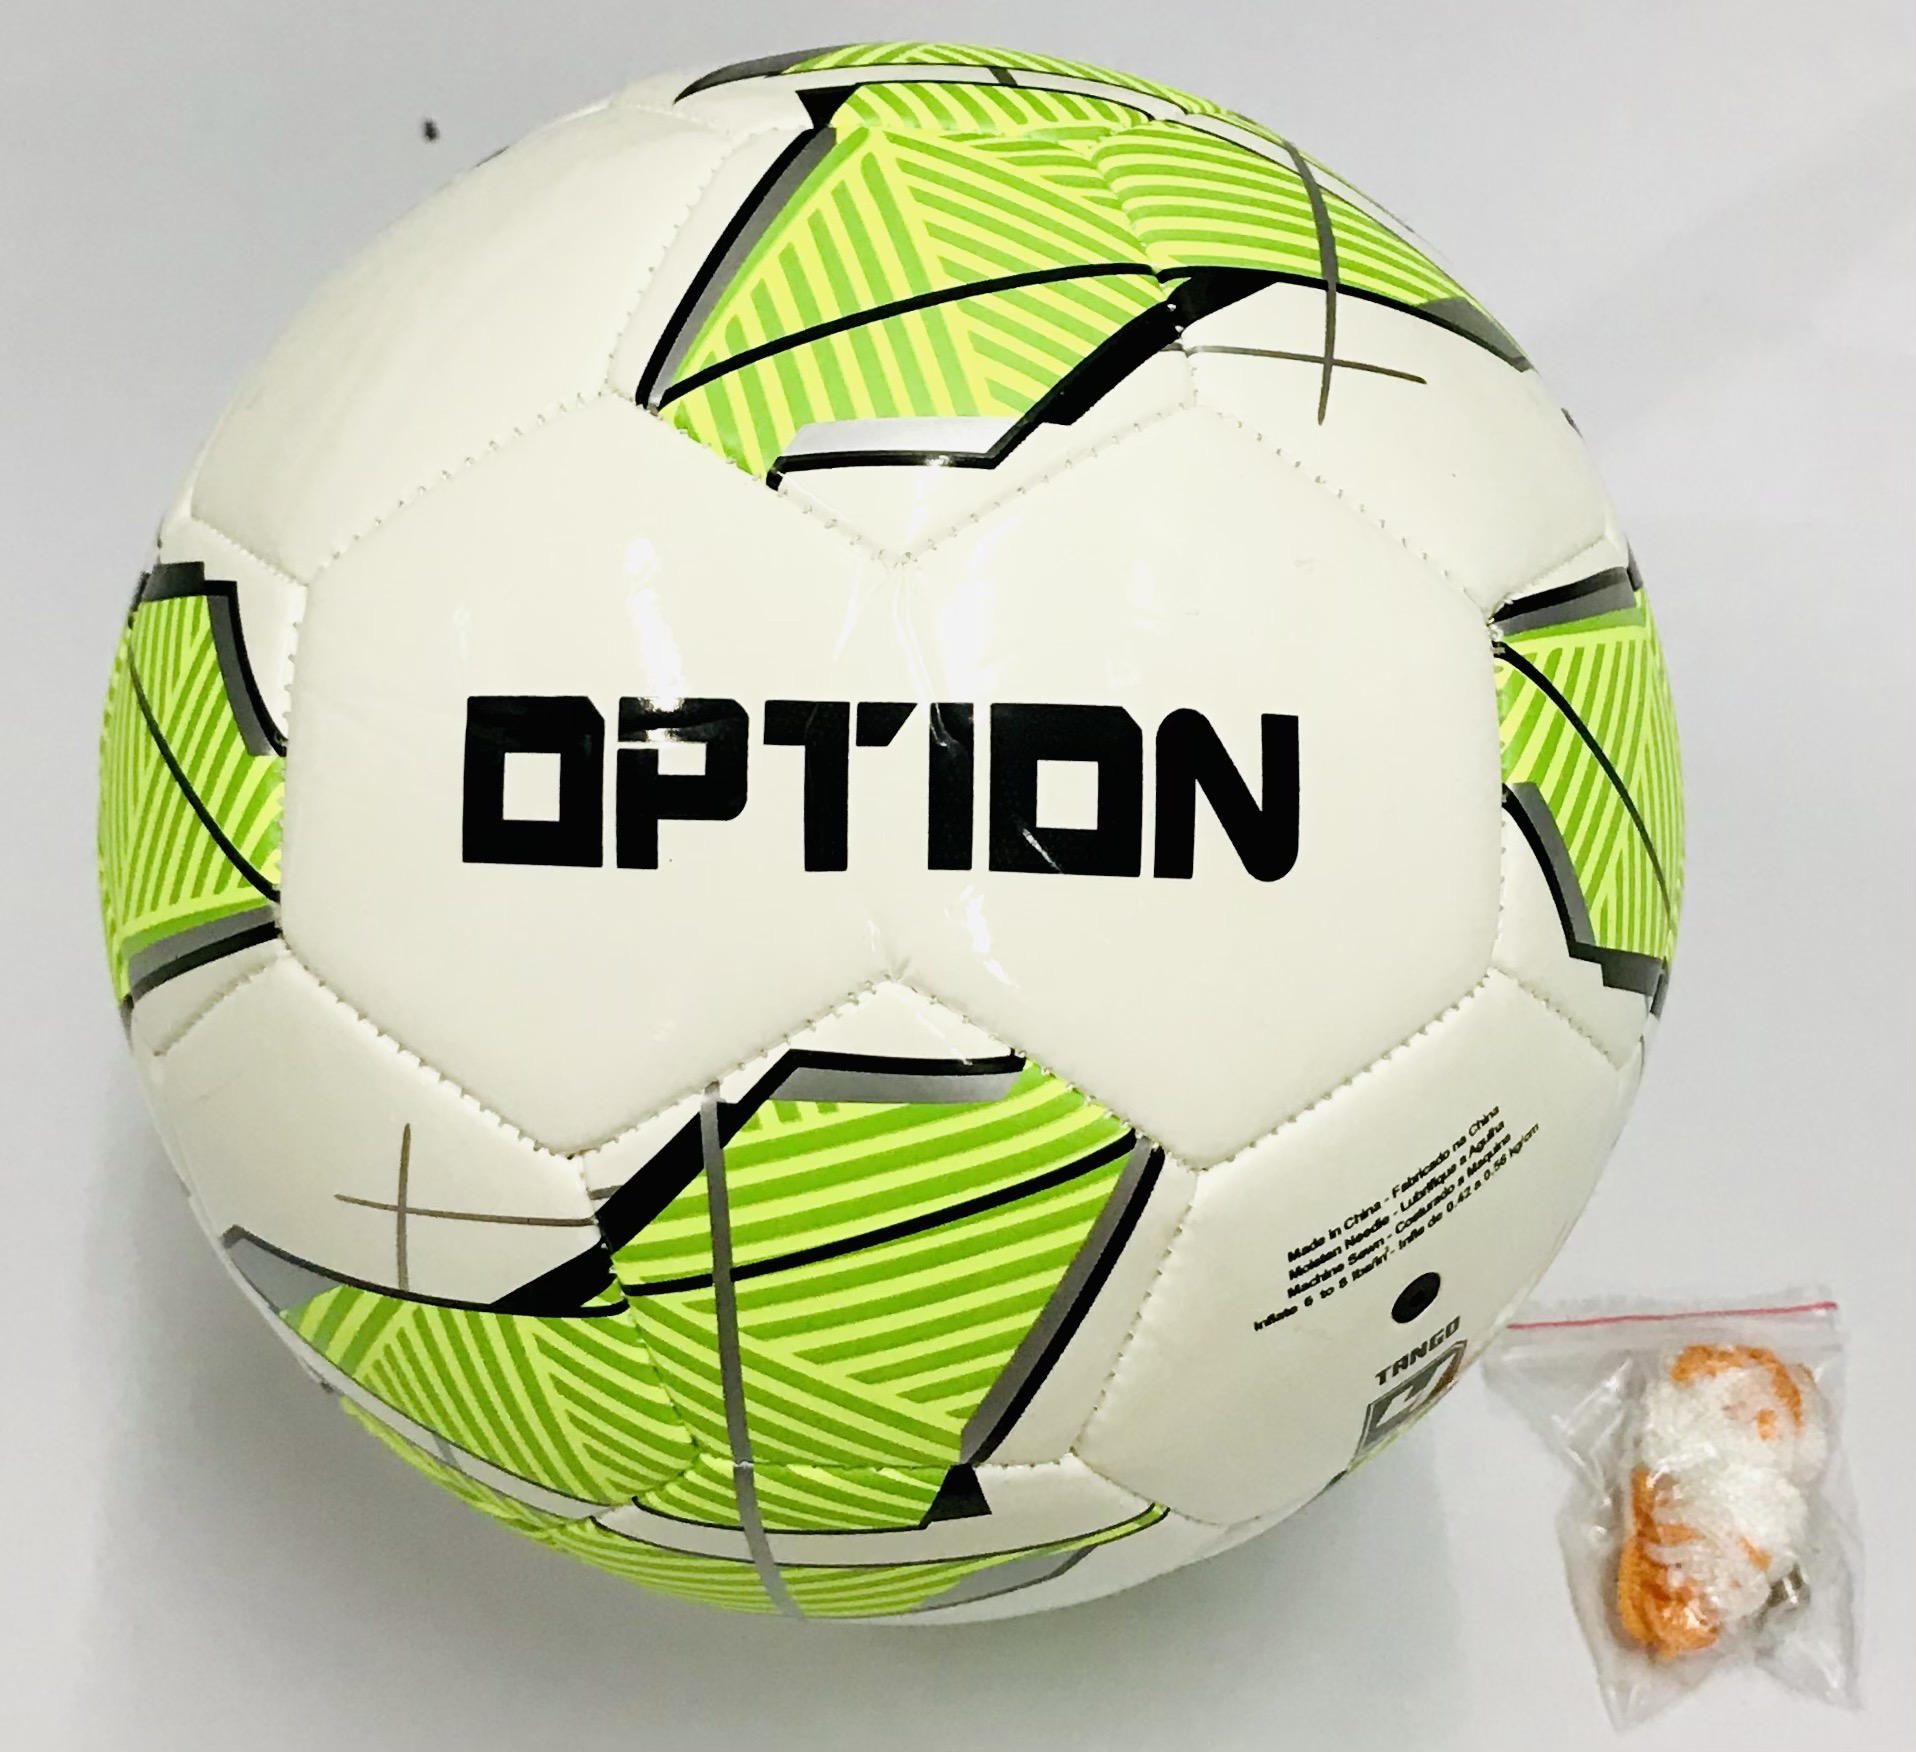 OPTION ลูกฟุตบอลหนังเย็บออฟชั่น เบอร์ 4 รุ่น Tango แถมฟรี : ตาข่ายใส่ฟุตบอล และ เข็มสูบลม